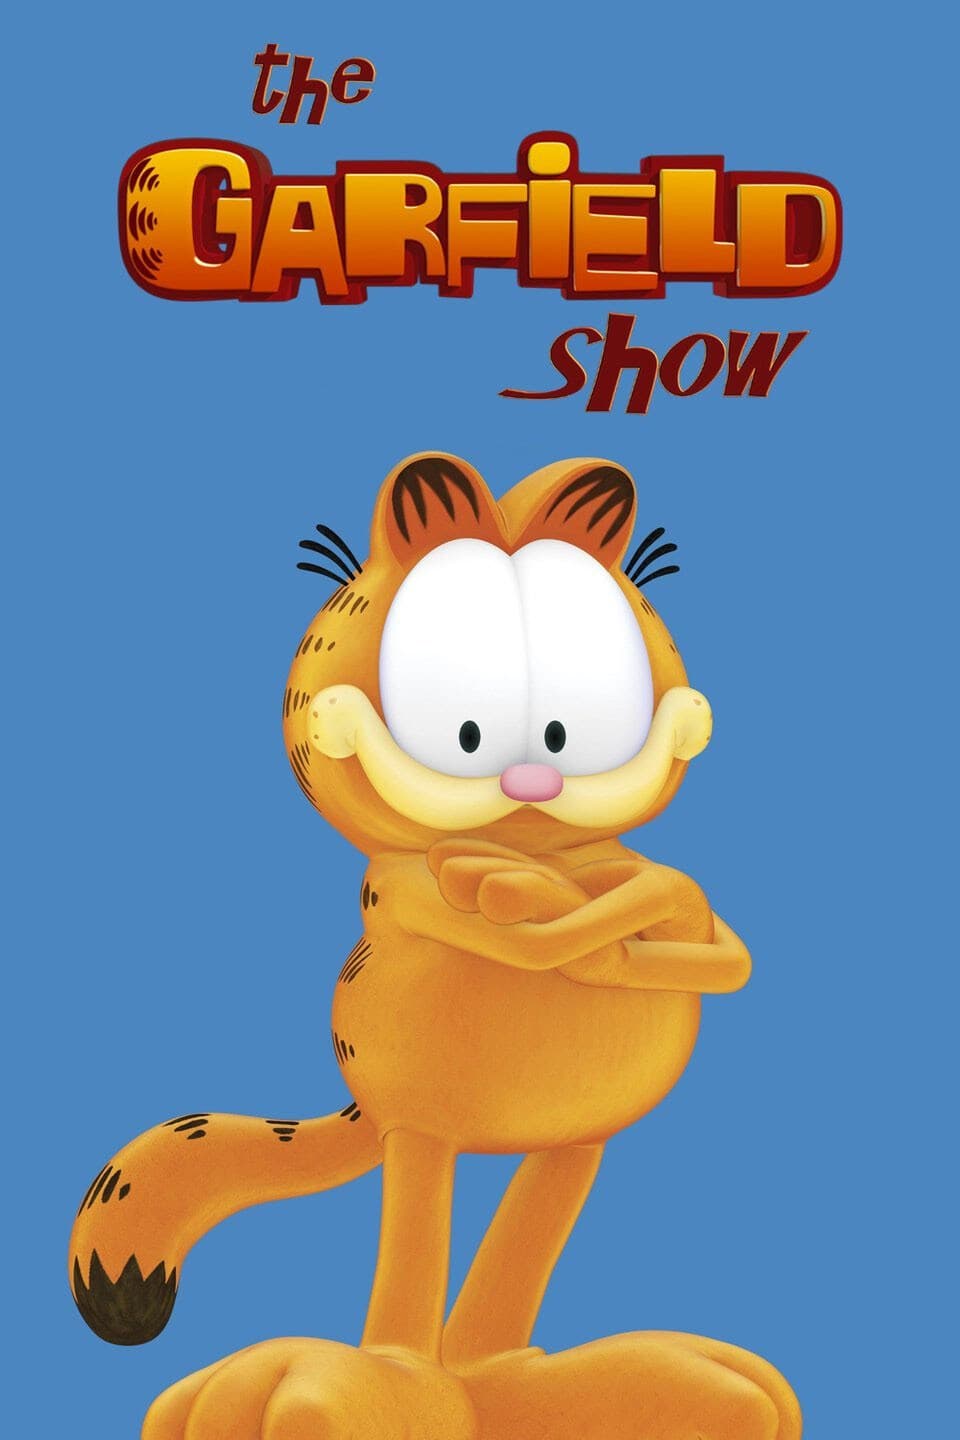 o mistério por trás do jogo perdido do Garfield 